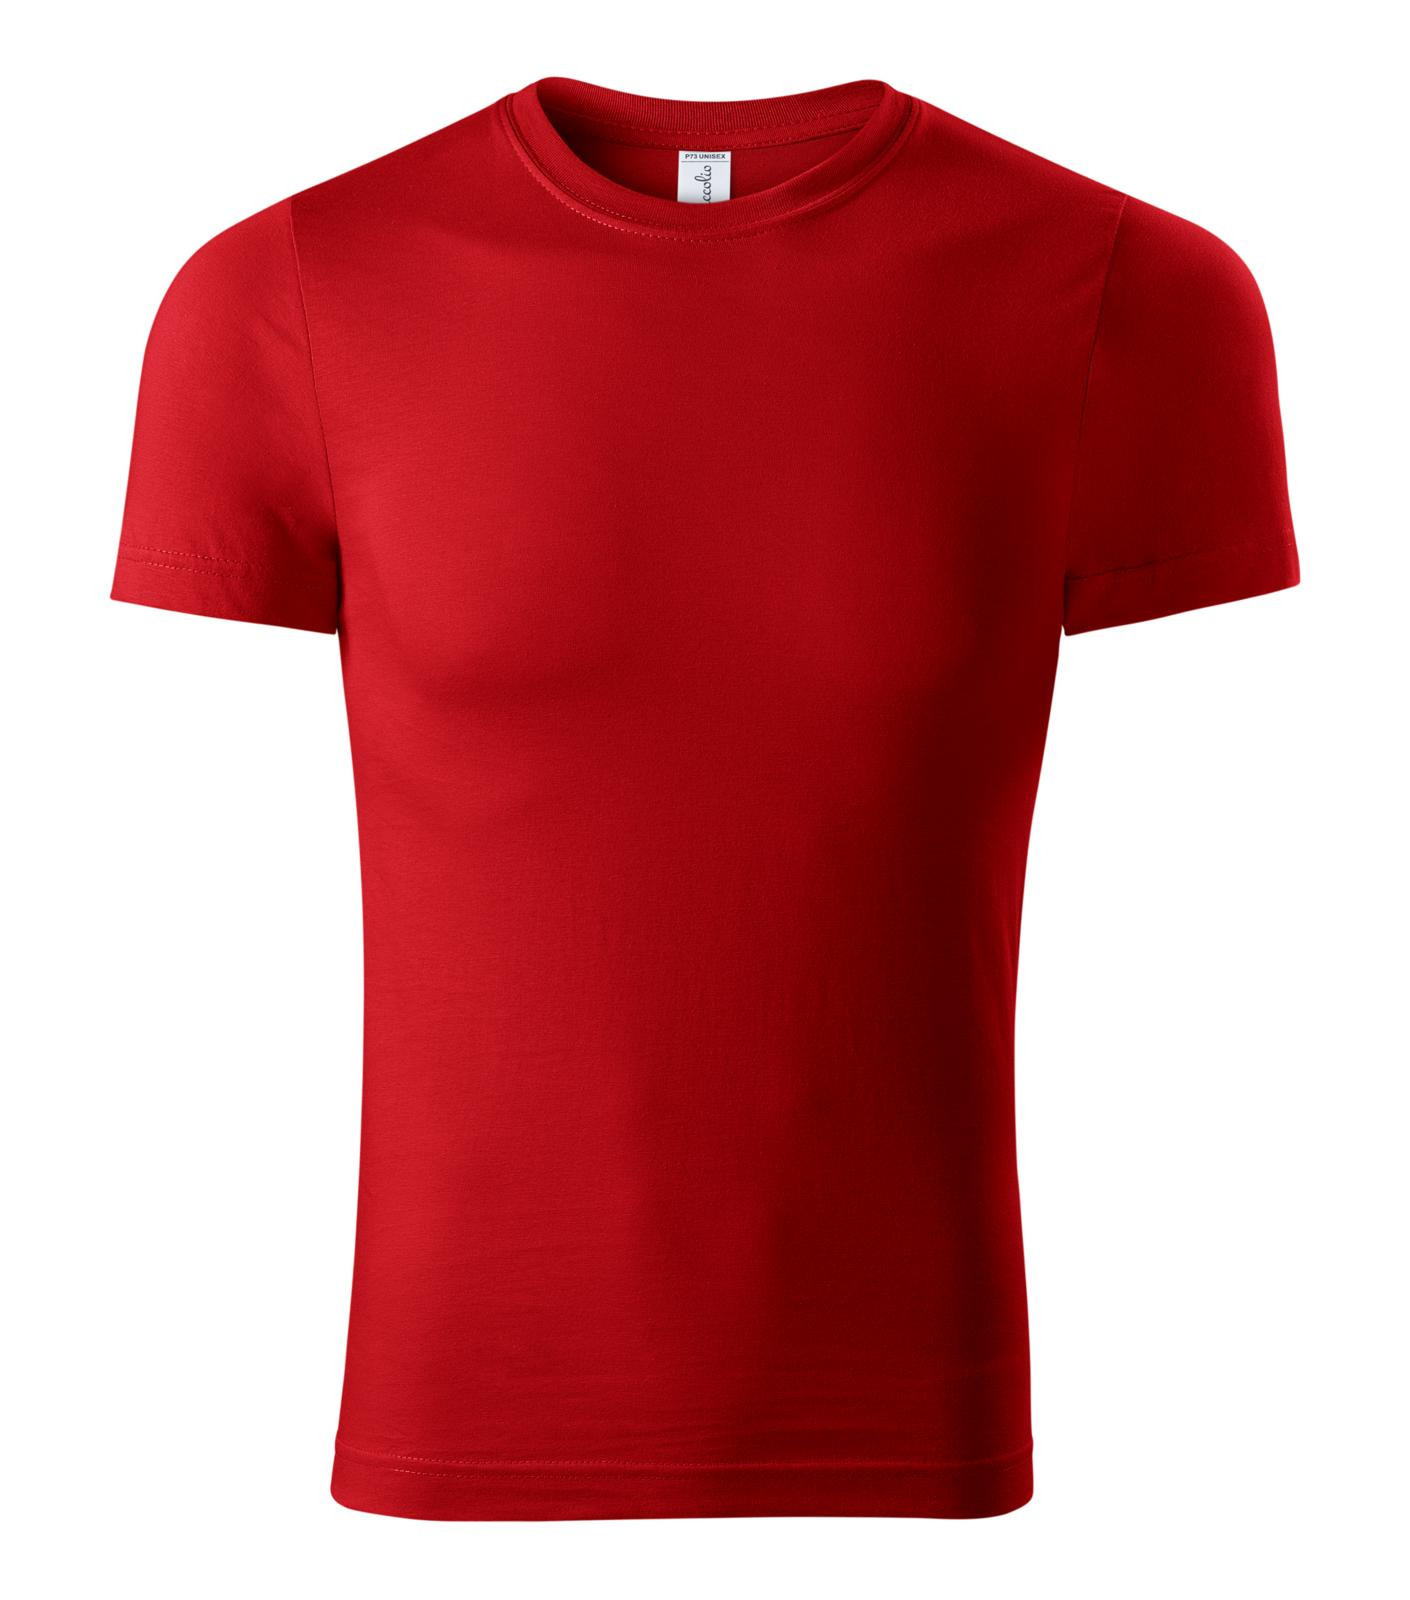 Unisex tričko Piccolio Paint P73 - veľkosť: 4XL, farba: červená